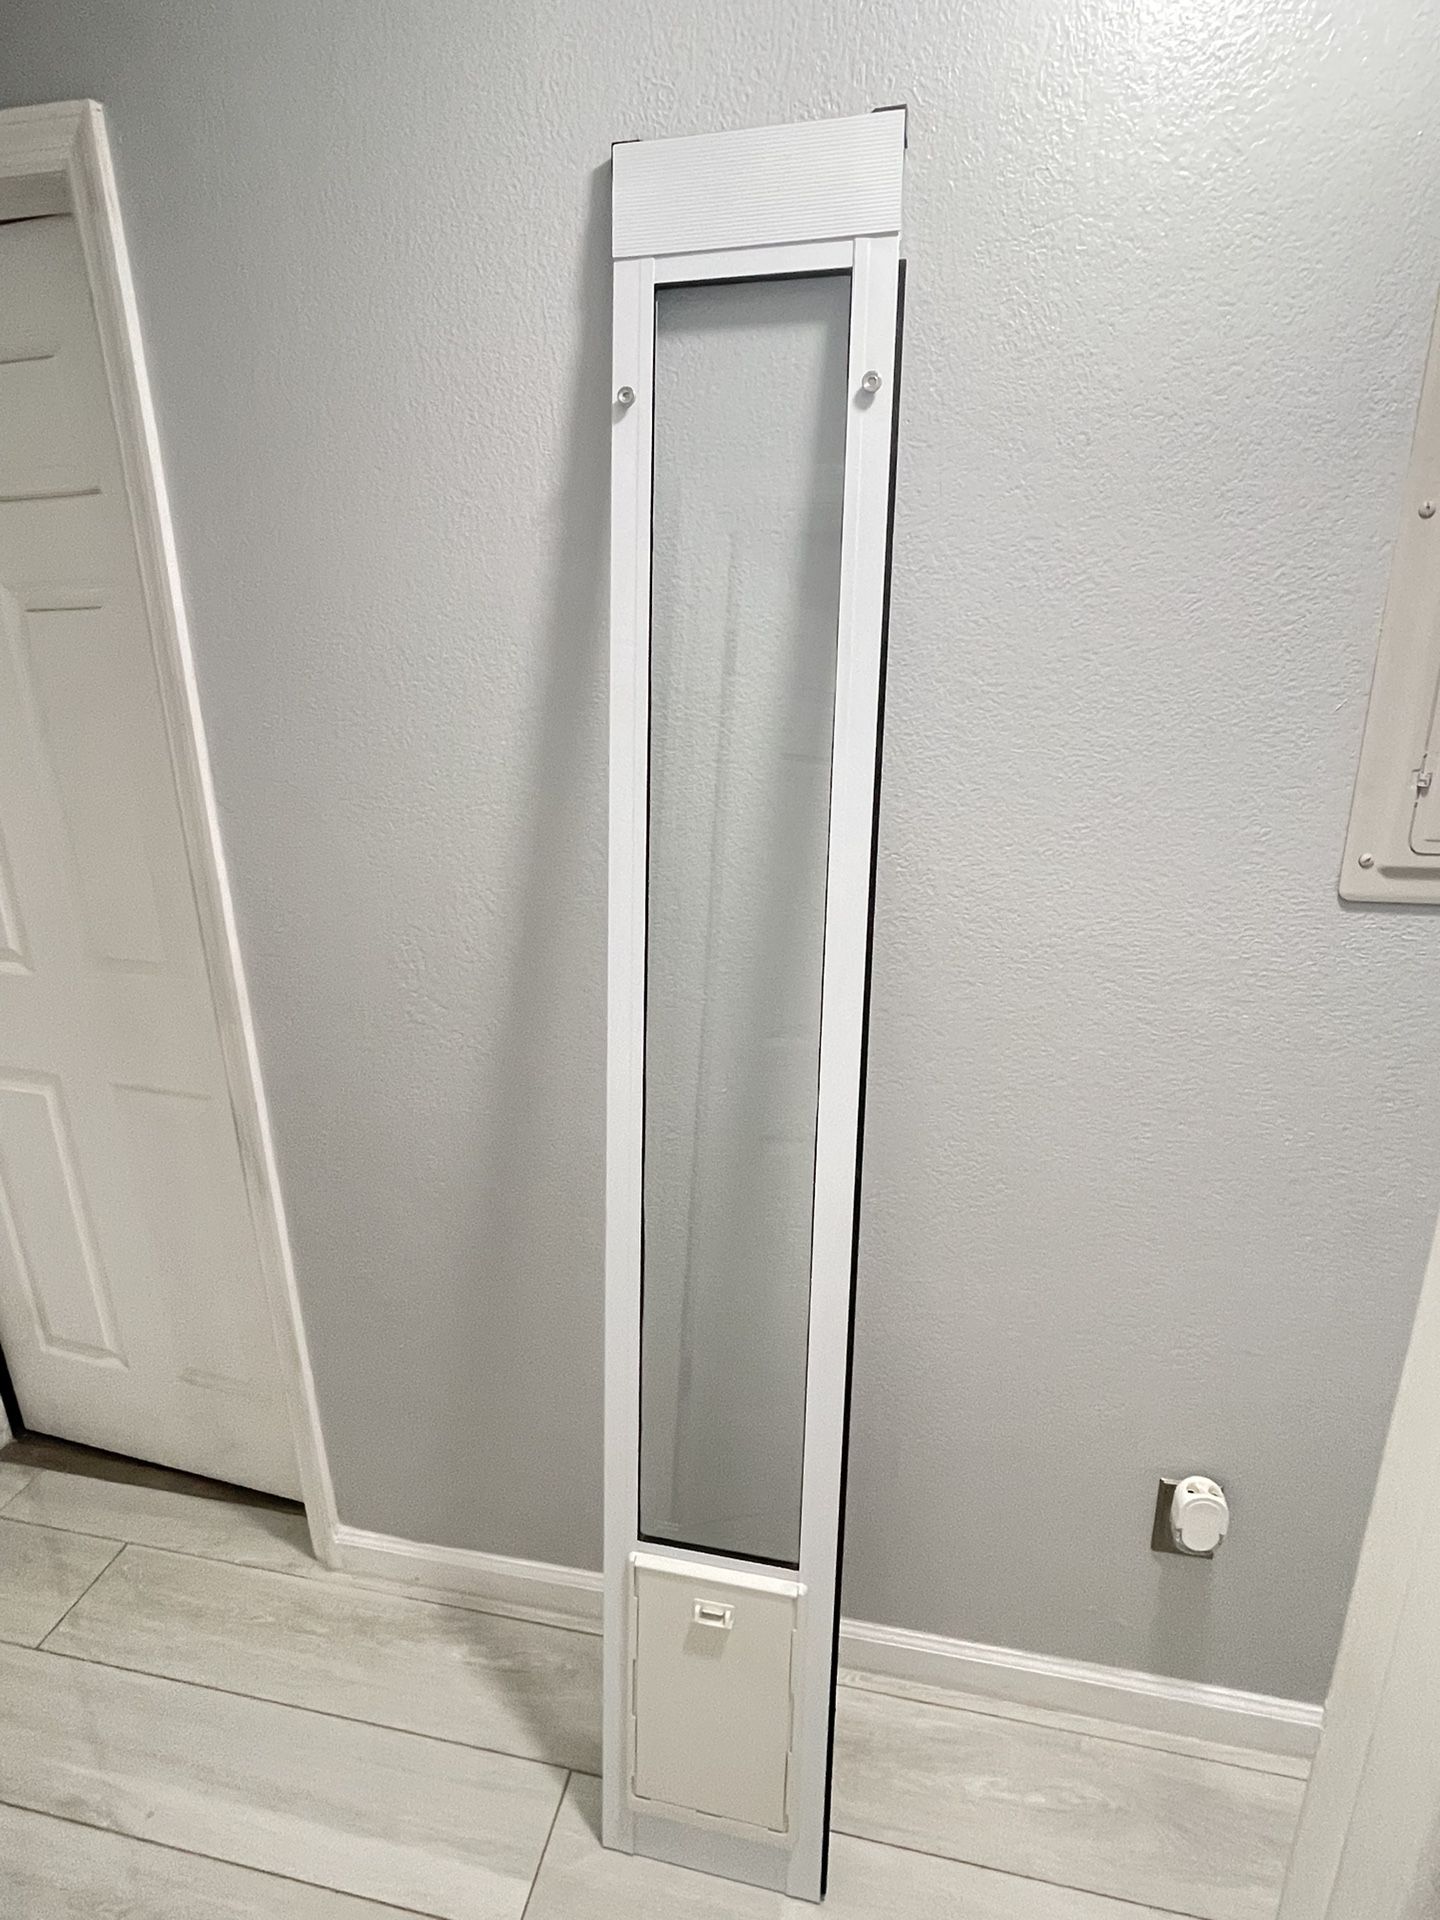 Sliding Pet Door